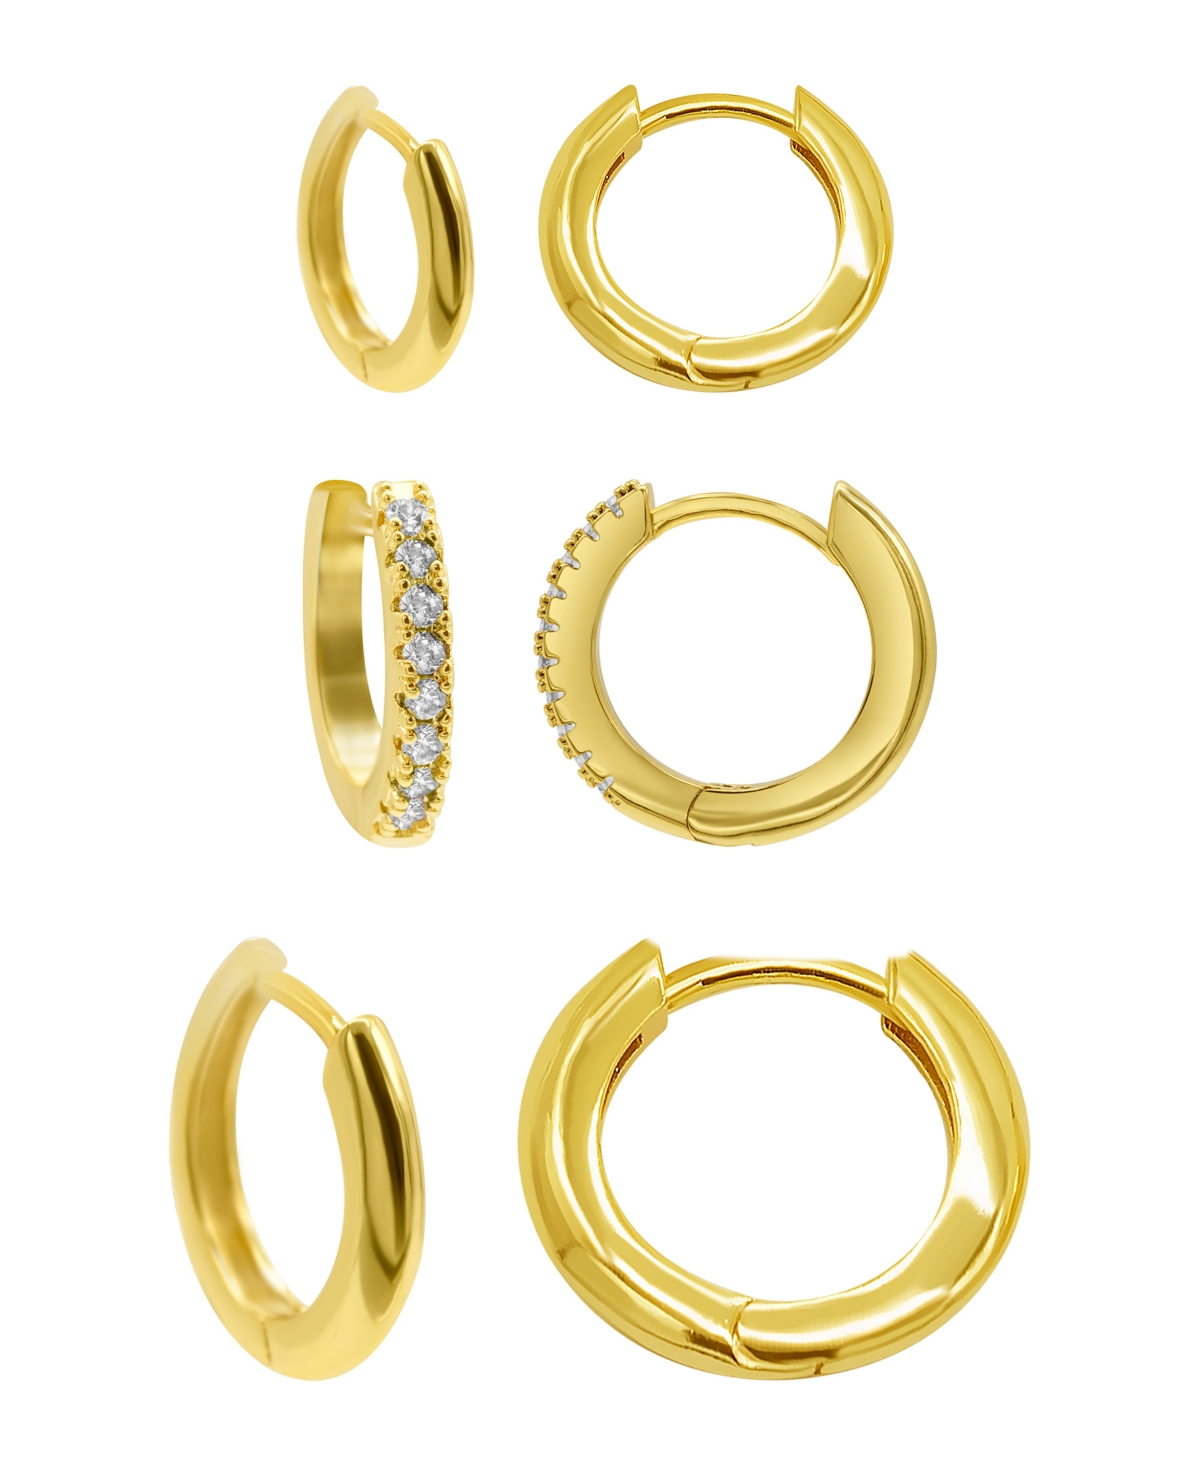 14K Gold Plated 3-Huggie Hoop Earrings Set with 1-Crystal Hoop - Gold